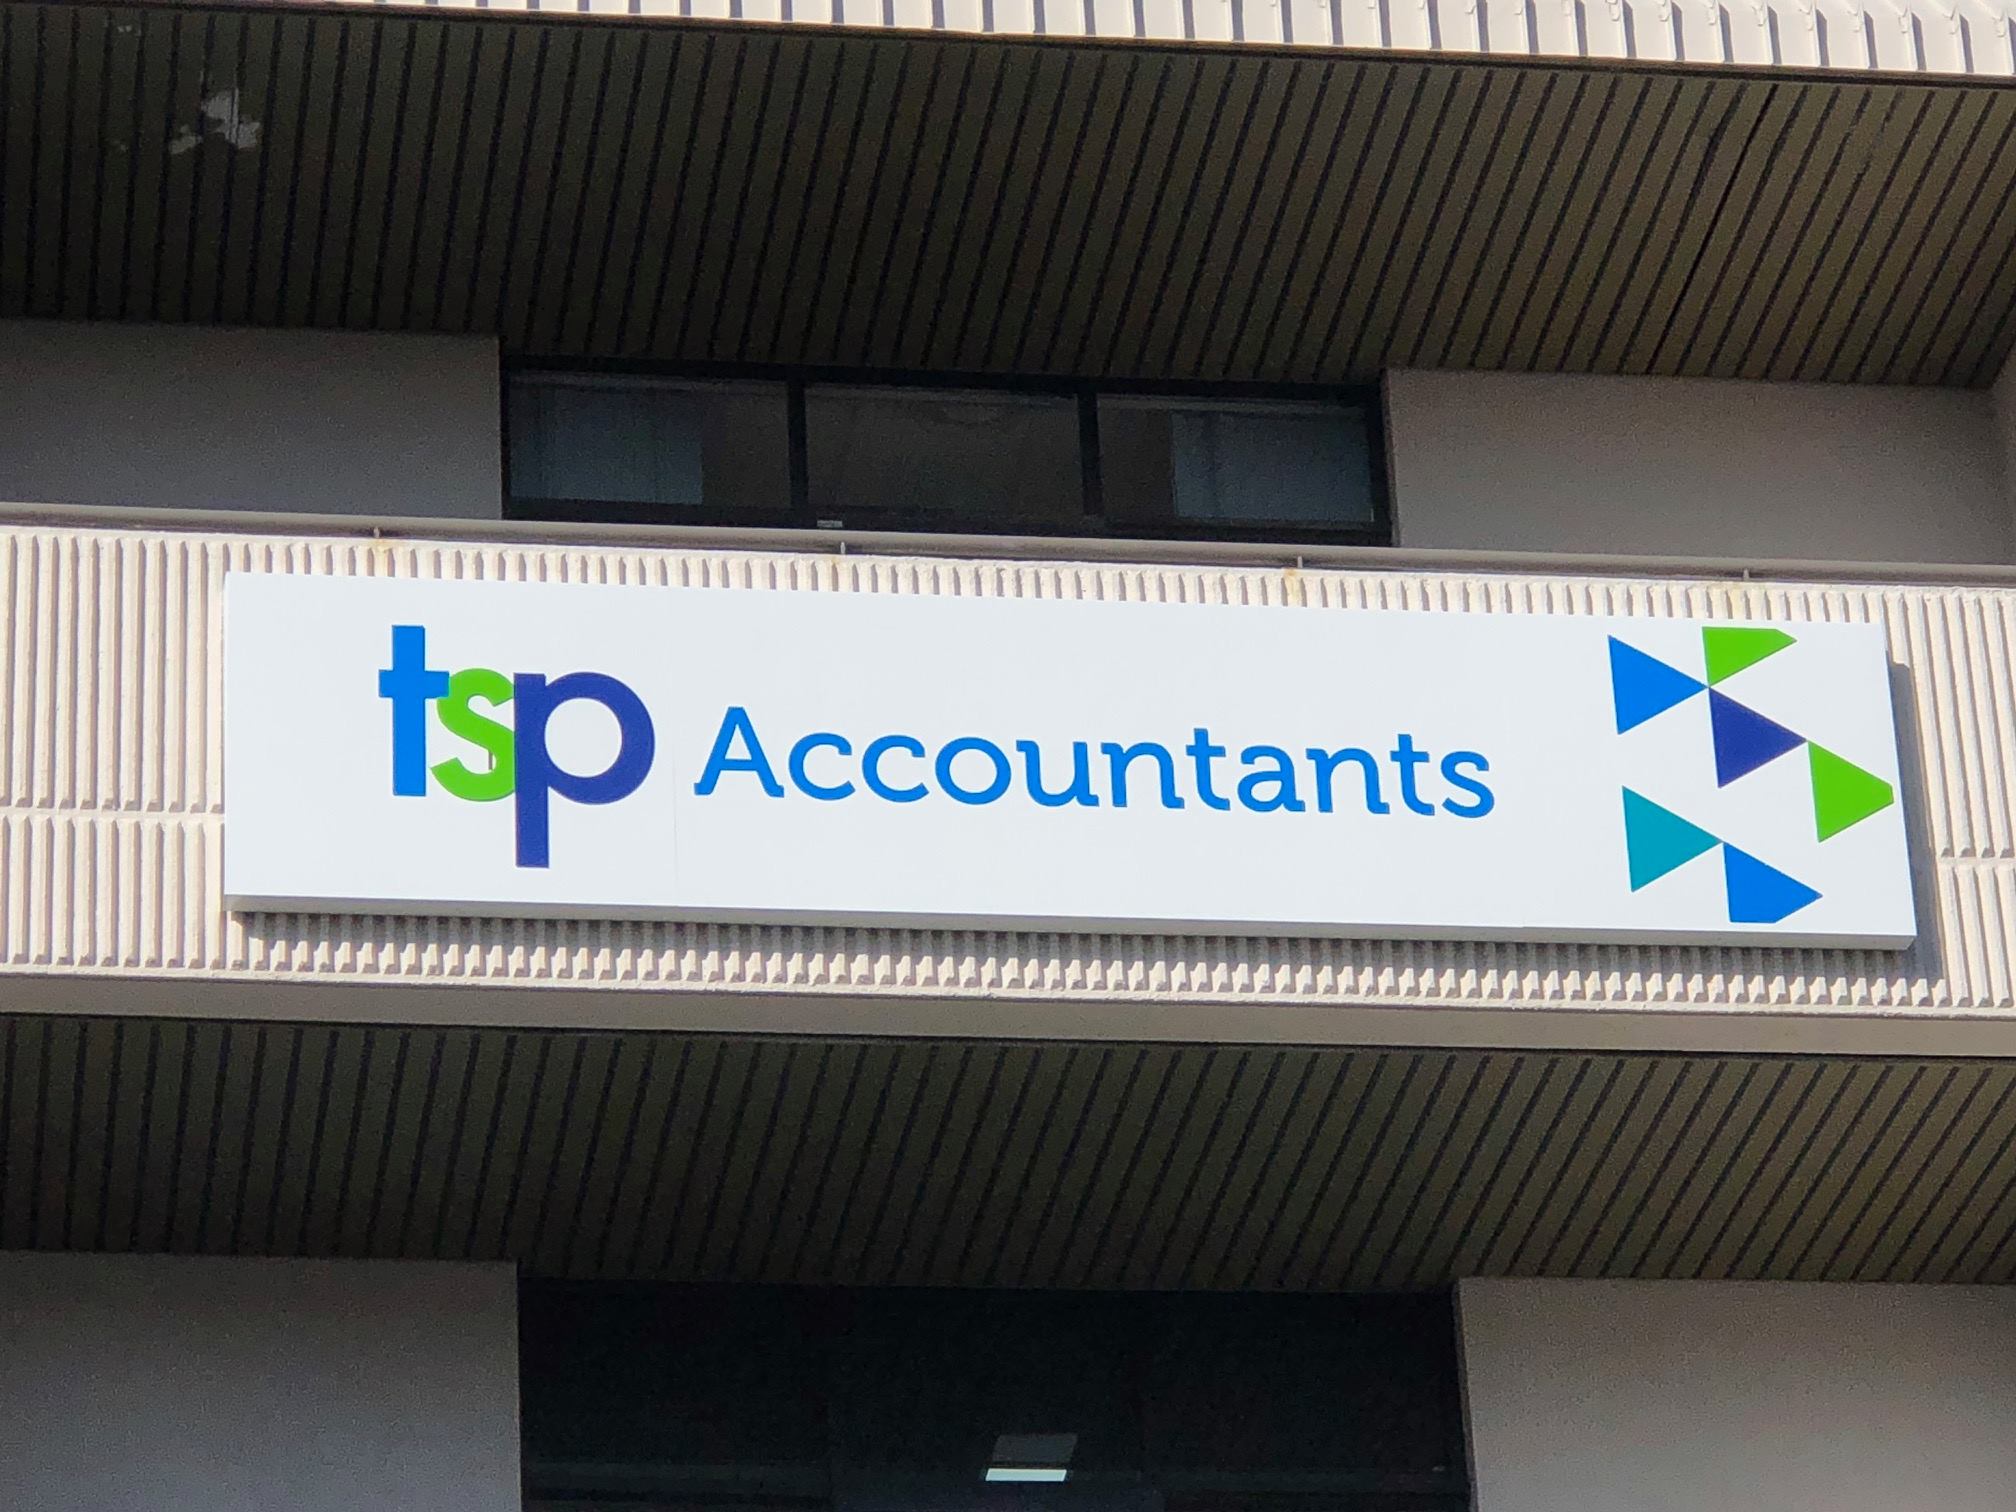 %Tsp Accountants Newcastle%